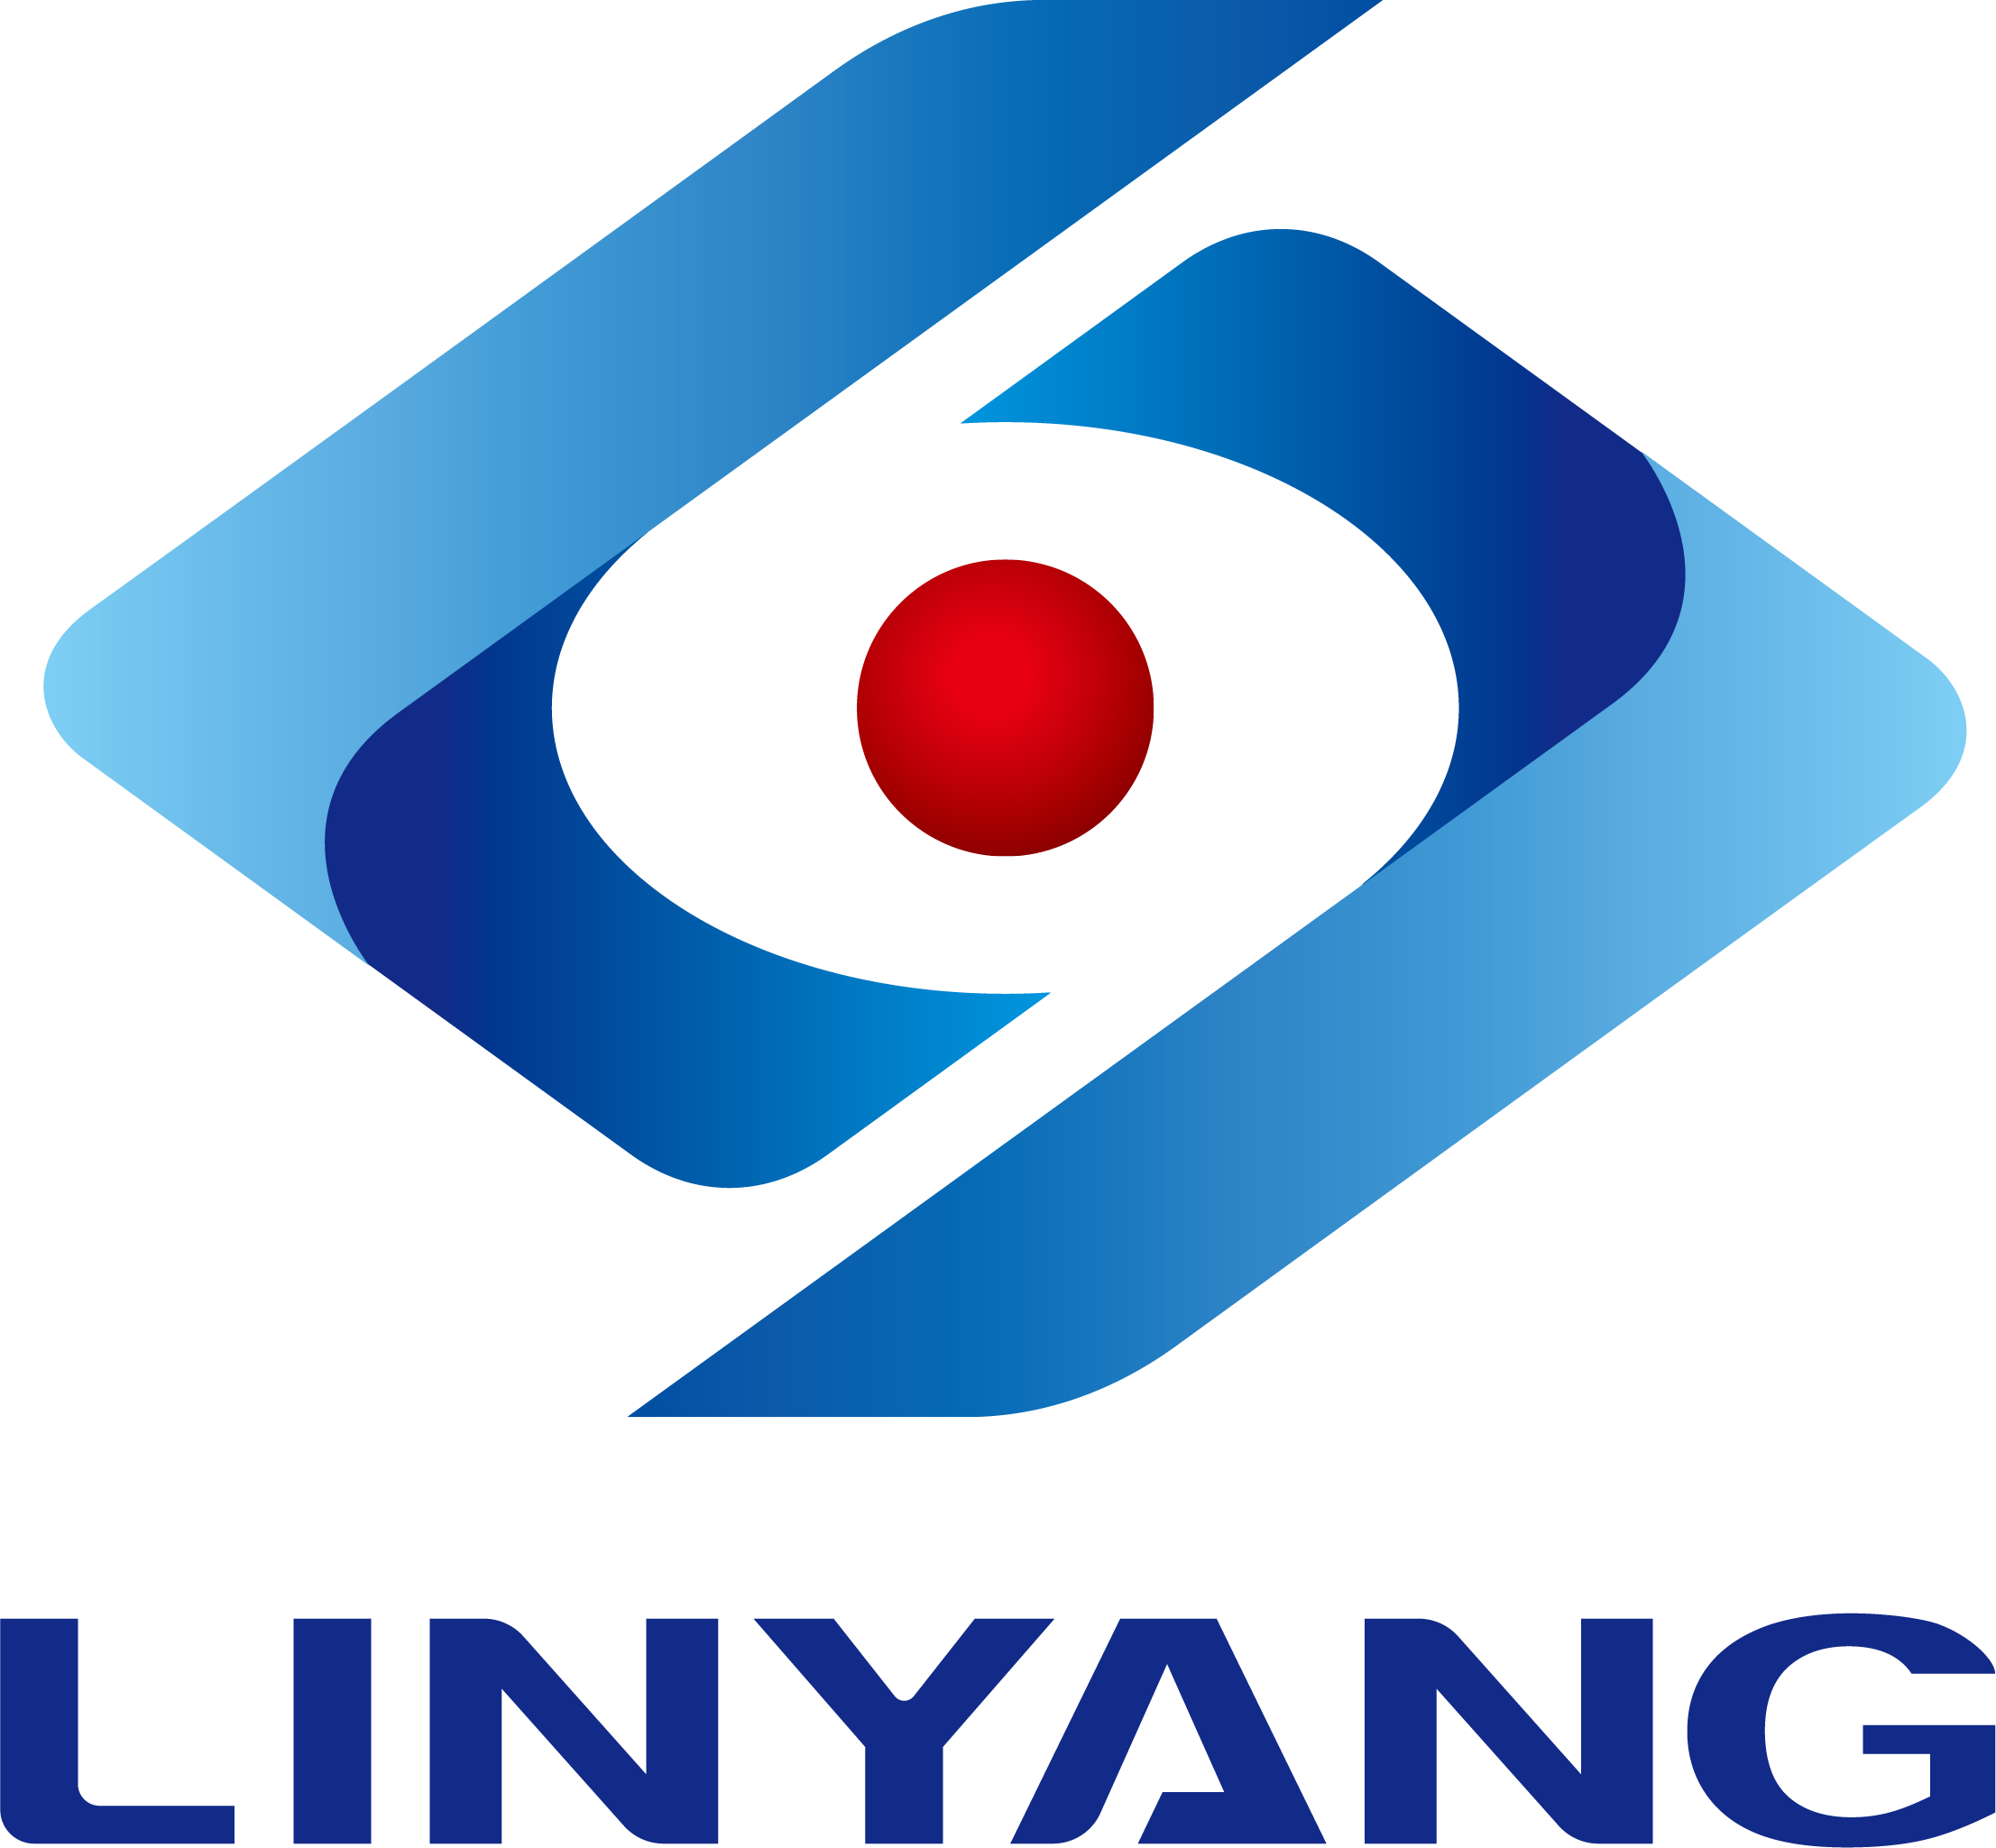 وقعت شركة Linyang Energy على ما يقرب من 1.25 مليار يوان من مشاريع العدادات الذكية ومشاريع الطاقة الكهروضوئية